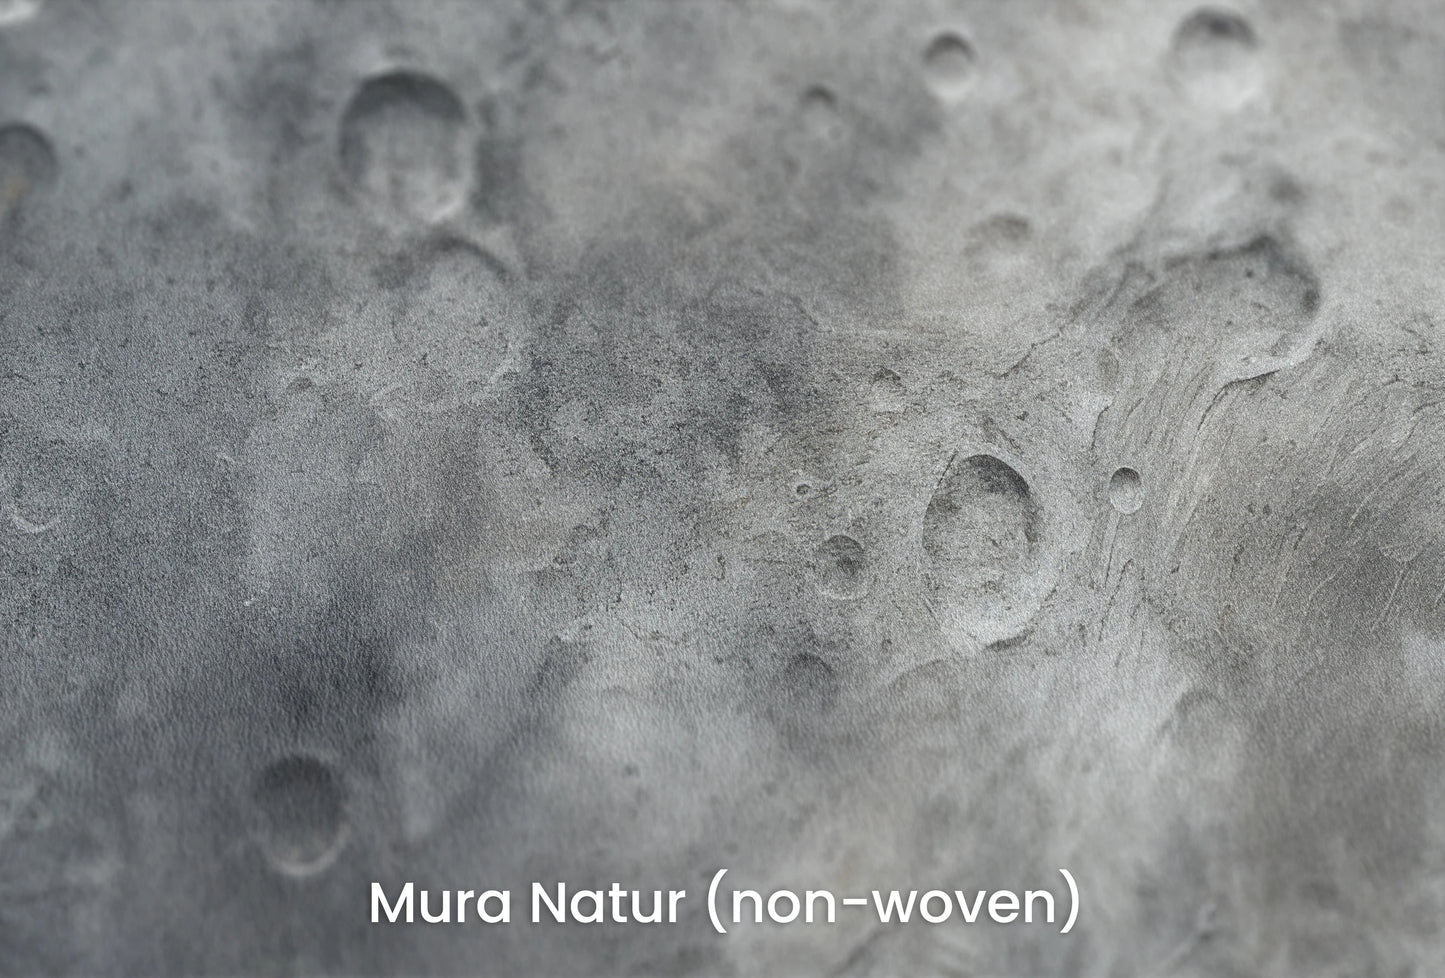 Zbliżenie na artystyczną fototapetę o nazwie Lunar Desert na podłożu Mura Natur (non-woven) - naturalne i ekologiczne podłoże.